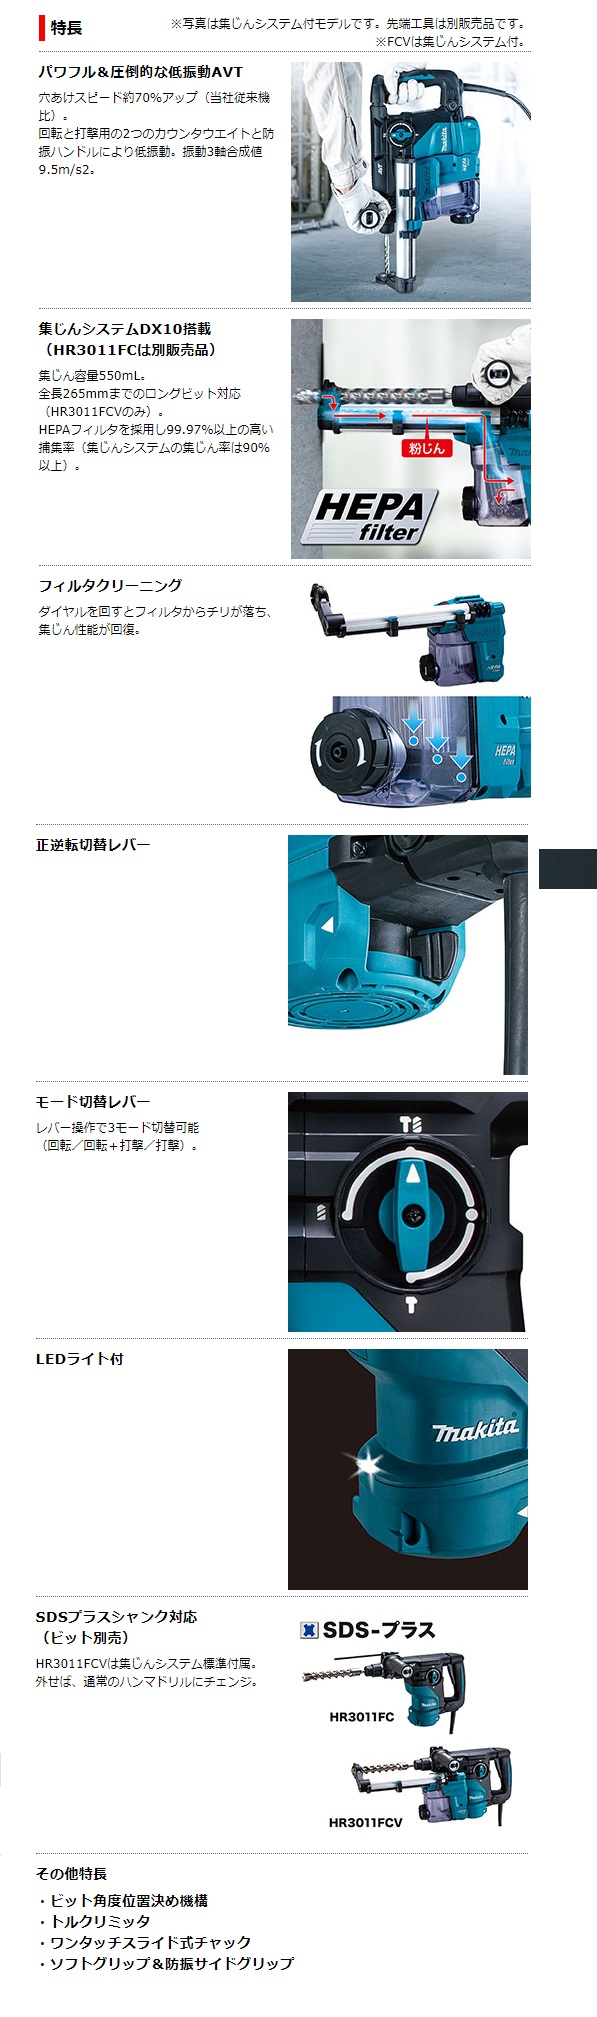 マキタ 30mm ハンマドリル HR3011FCV HR3011FC / 建築金物通販【秋本